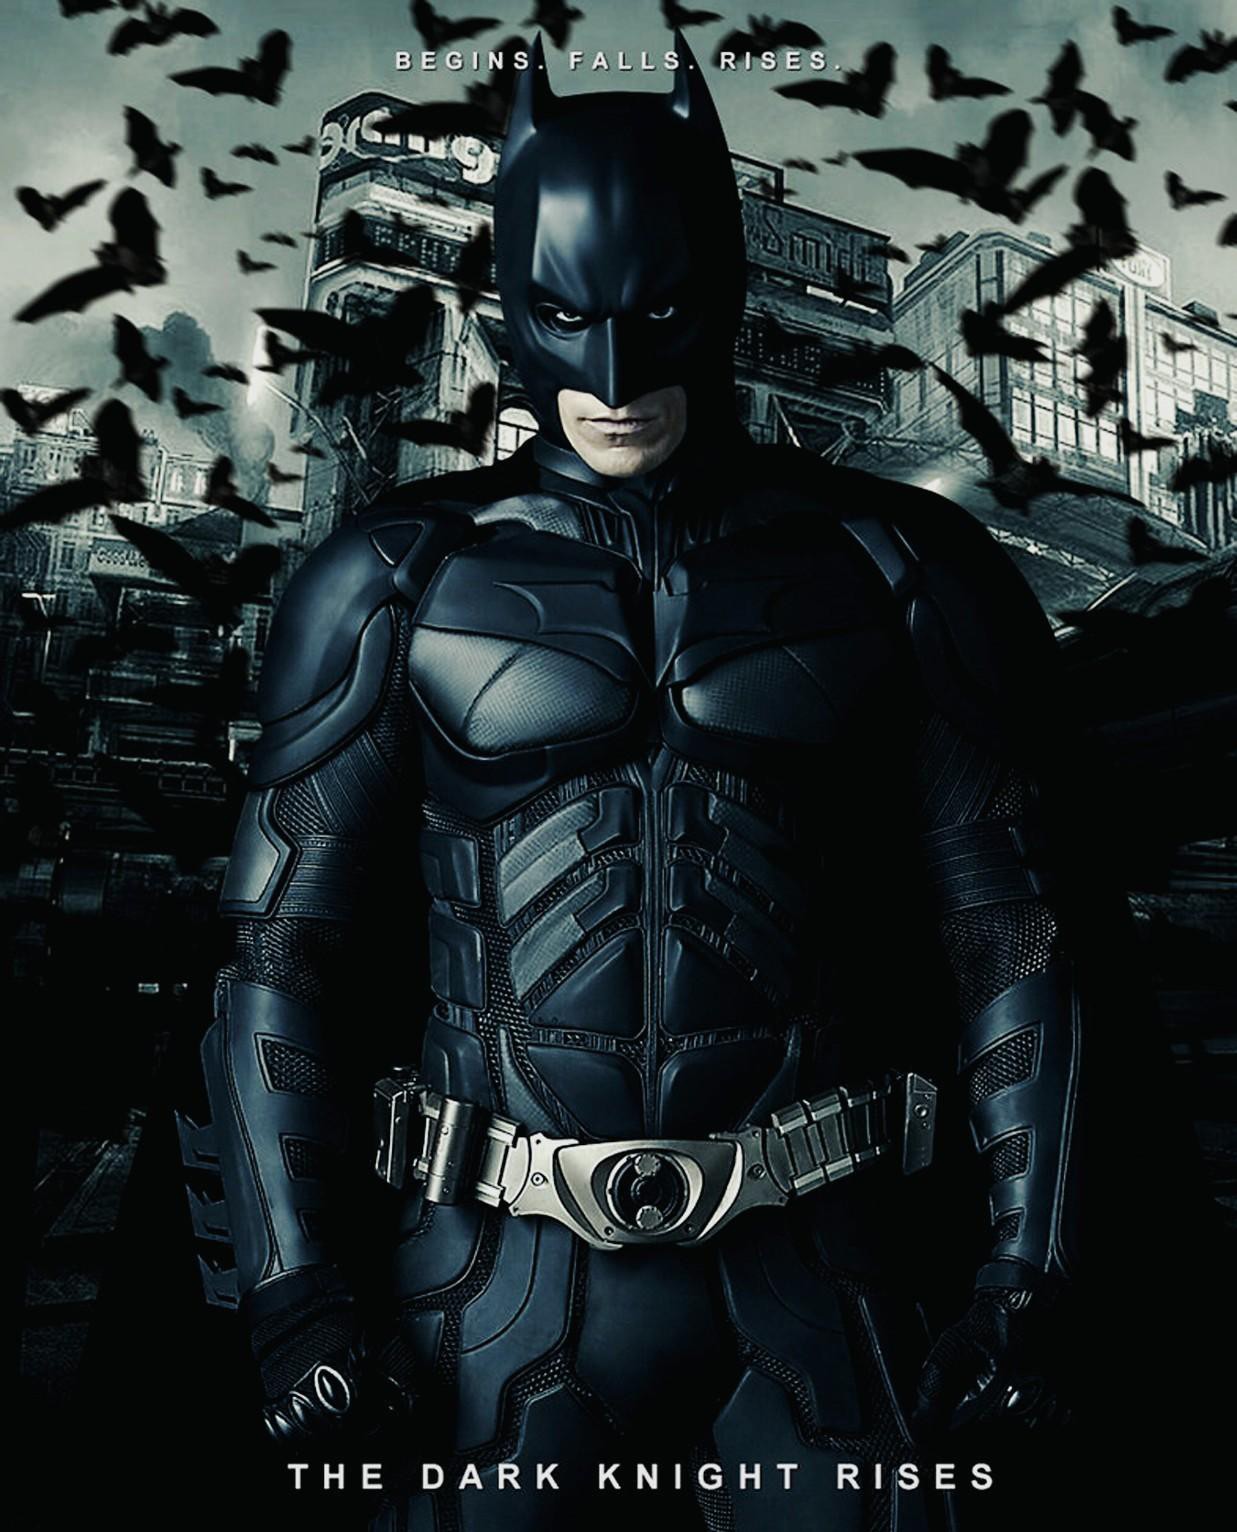 5.《蝙蝠侠:黑暗骑士崛起》imdb评分:8.3